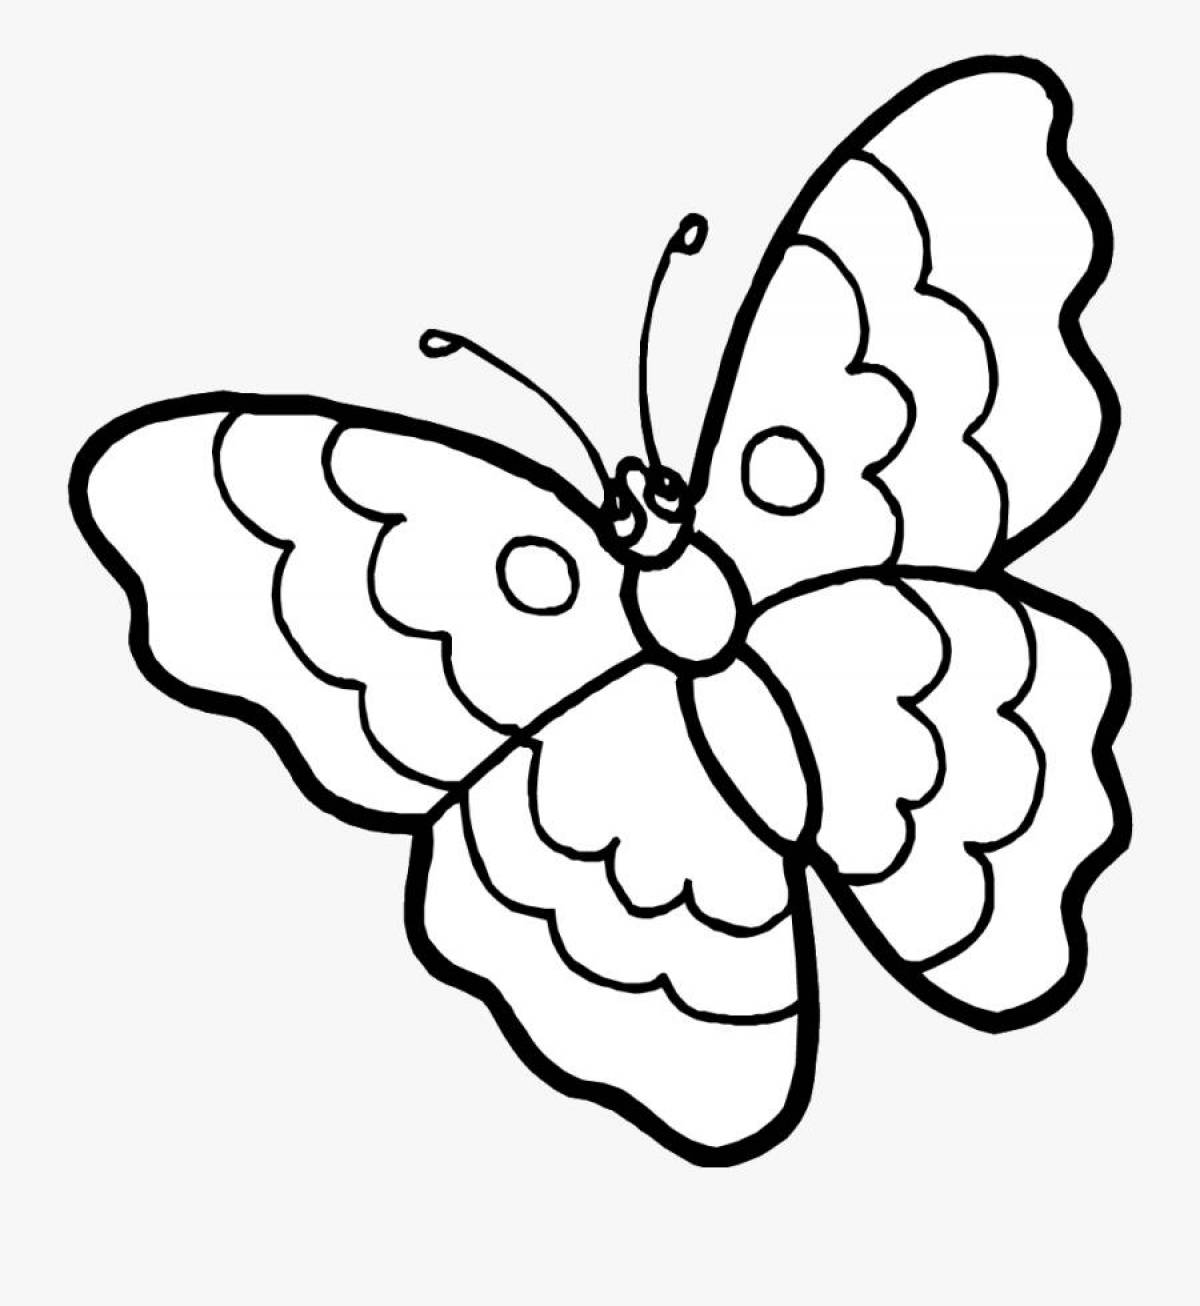 Срисовка бабочек карандашом жирно